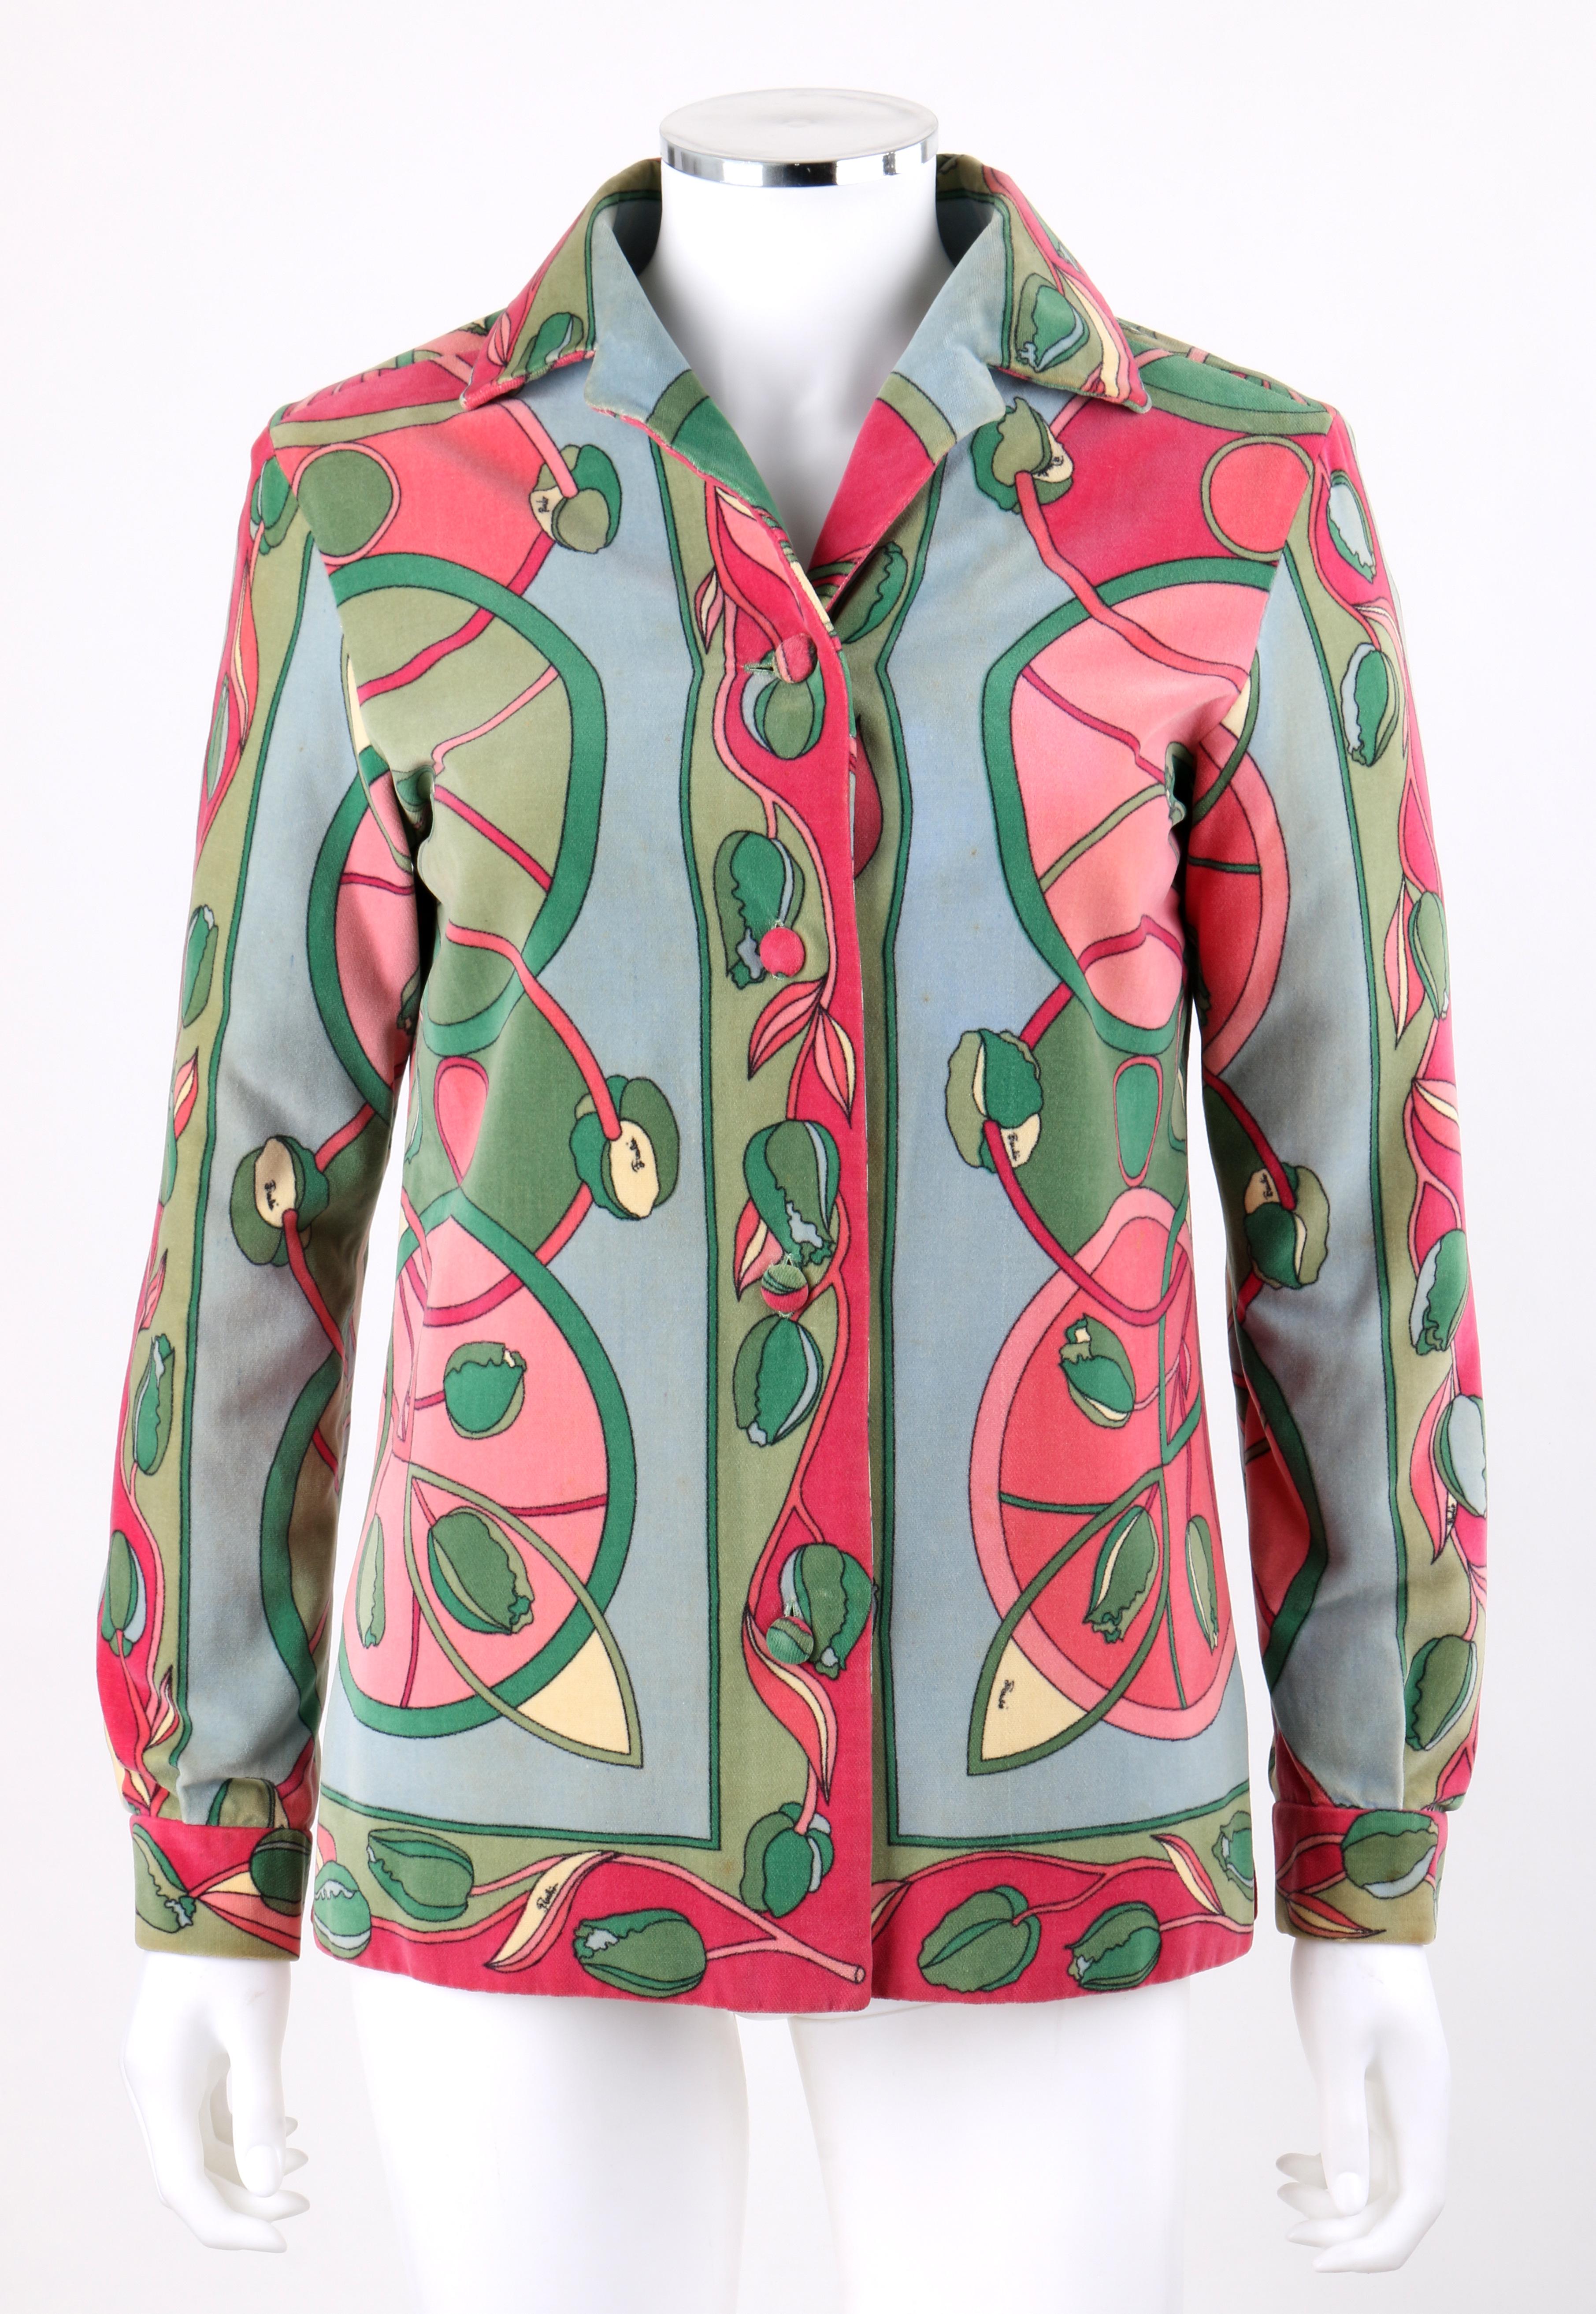 EMILIO PUCCI c.1960's Multicolor Tulip Floral Velvet Button Front Jacket
 
CIRCA: 1960er Jahre
Label(s): Emilio Pucci   
Stil: Jacke
Farbe(n): Blautöne, Grün, Rosa und Gelb.  
Gefüttert: Ja
Markierter Stoff Inhalt: 100% Baumwolle 
Zusätzliche